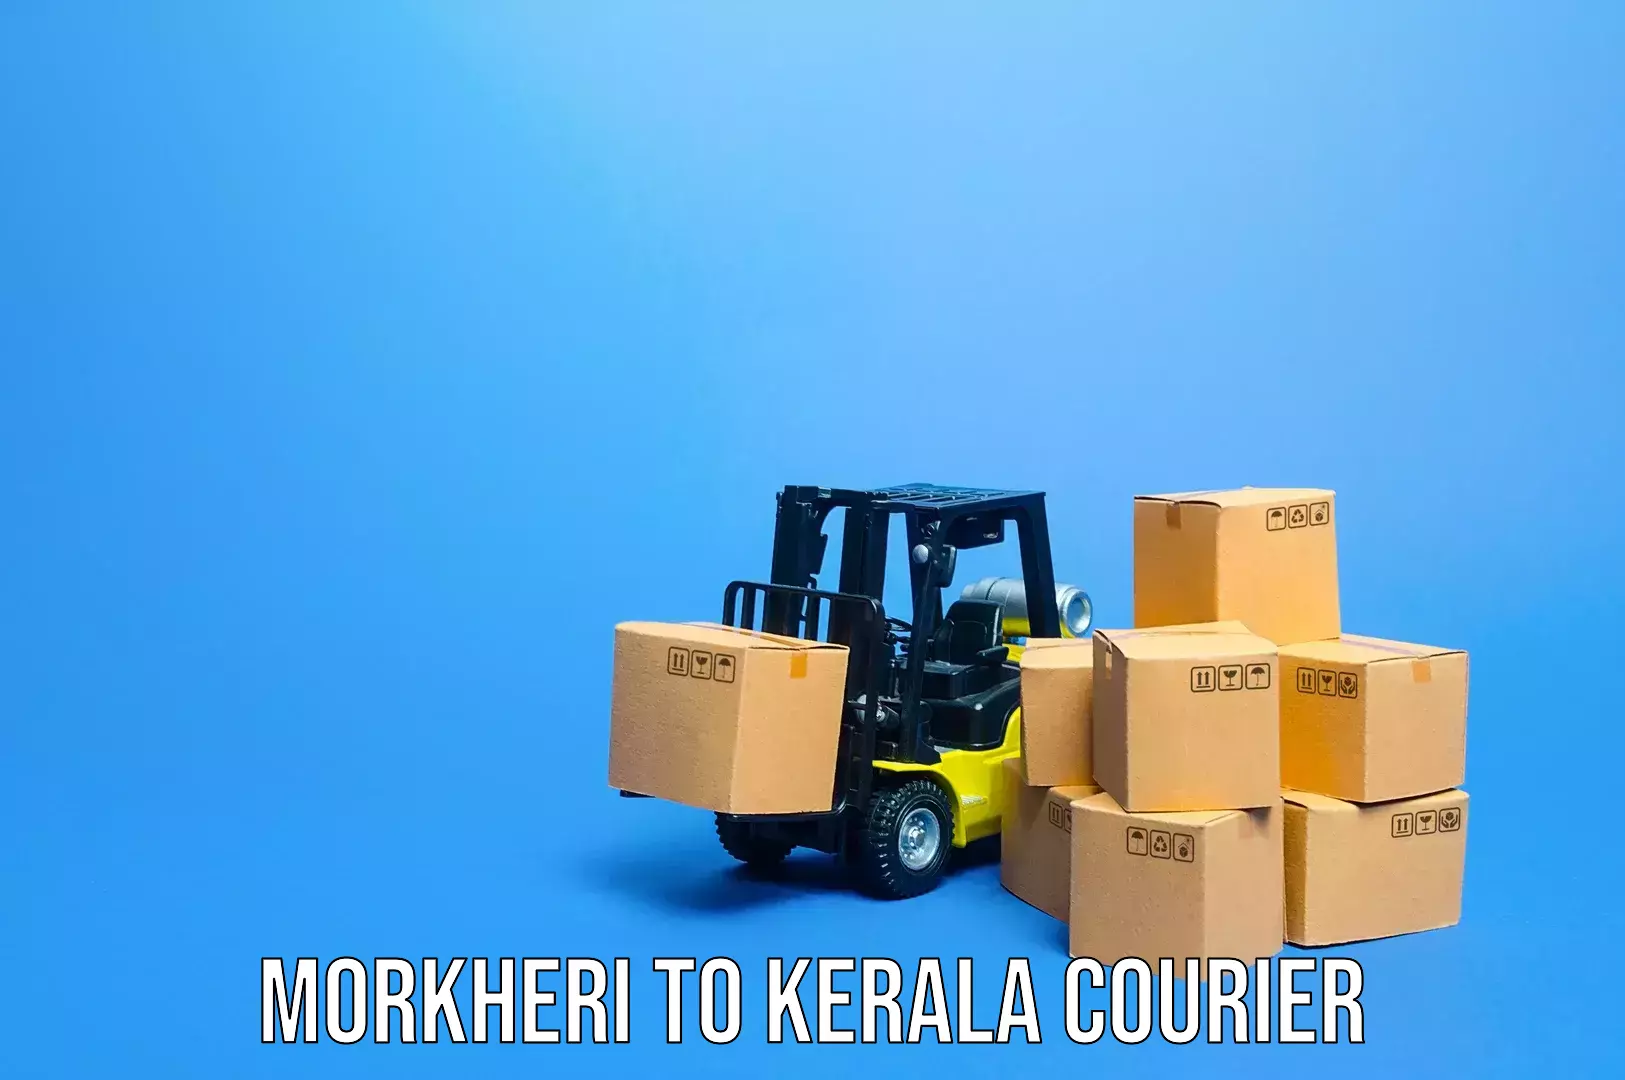 Luggage shipment logistics Morkheri to Kerala